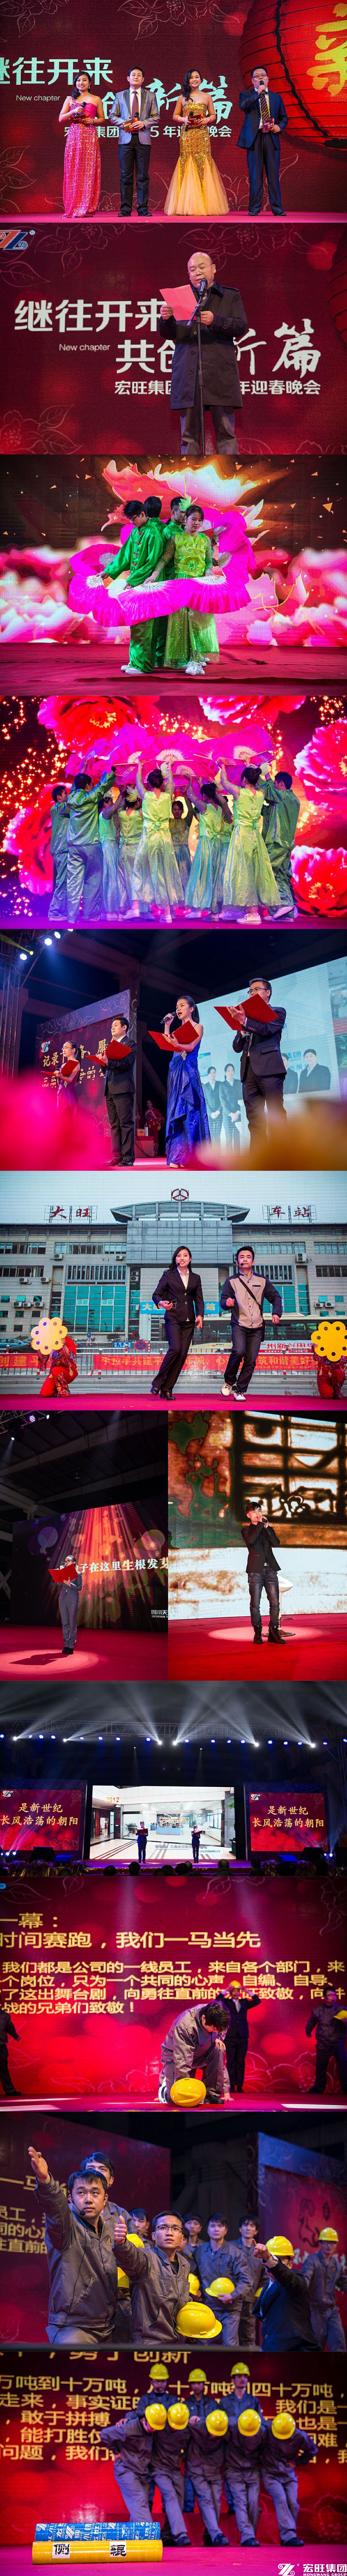 宏旺集团隆重举行2015年迎春晚会